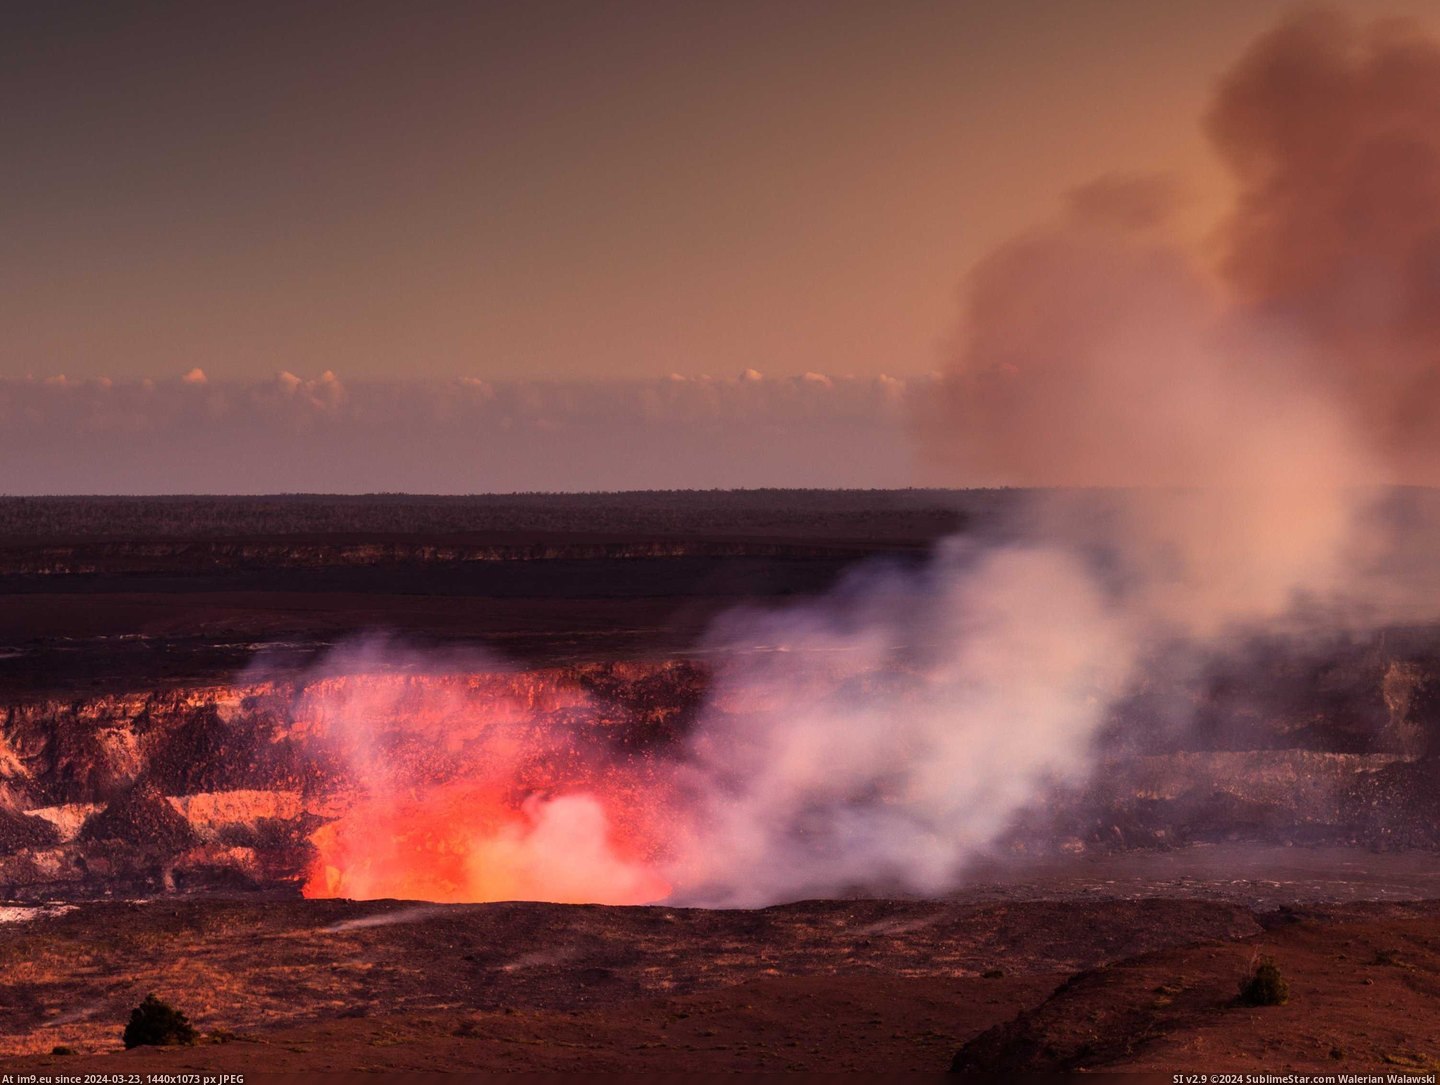 #Park #Hawaii #Volcanoes #National [Earthporn] Hawaii Volcanoes National Park [3004x2250] Pic. (Изображение из альбом My r/EARTHPORN favs))